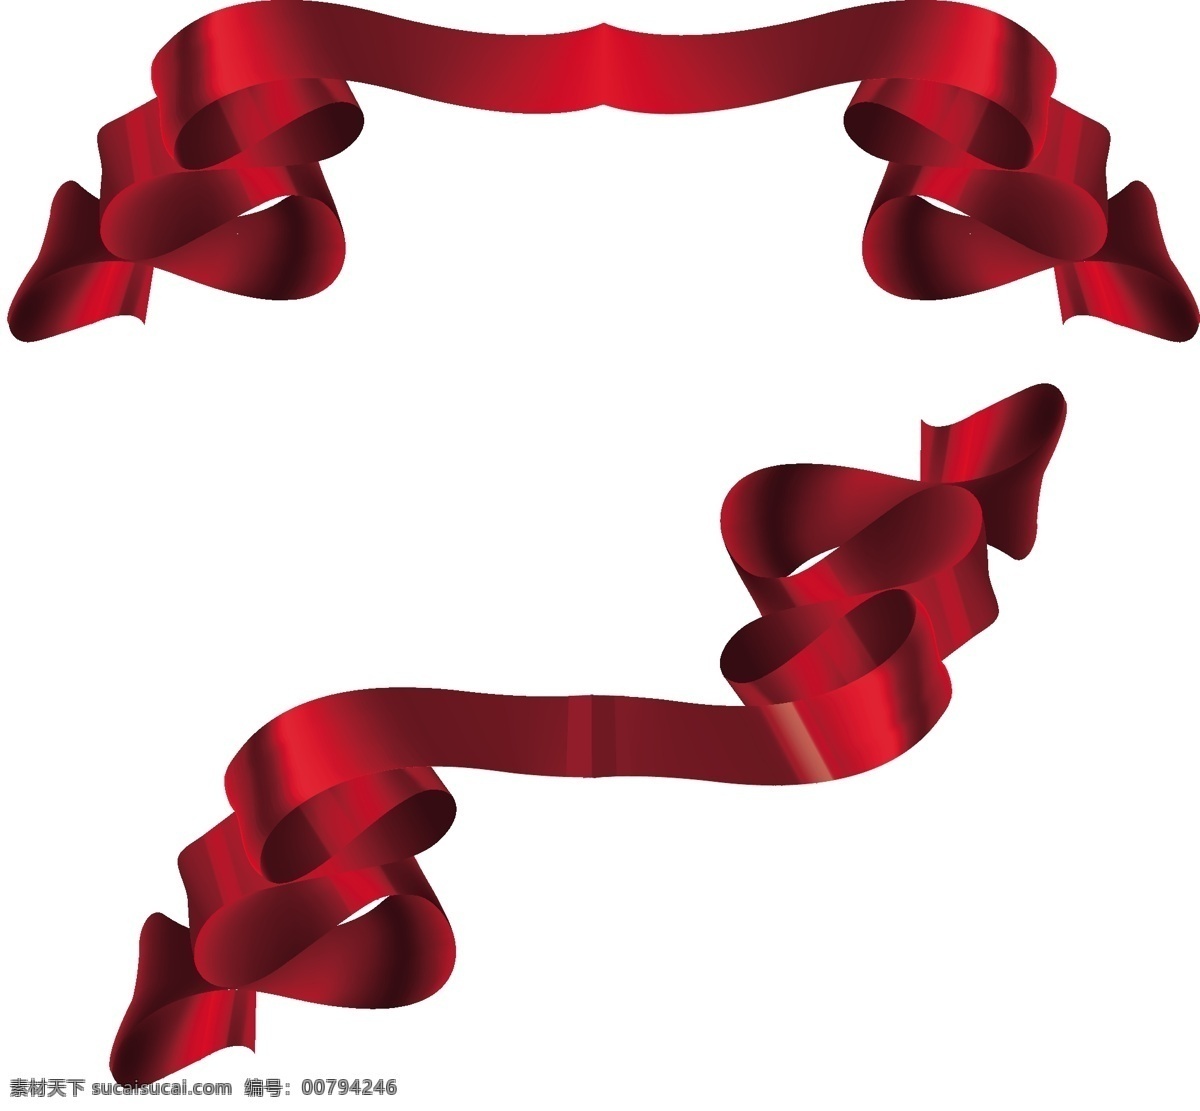 红色 弯曲 丝带 元素 红色丝带 矢量丝带 弯曲丝带 创意丝带 矢量元素 装饰元素 矢量图 矢量 丝带装饰 丝带元素